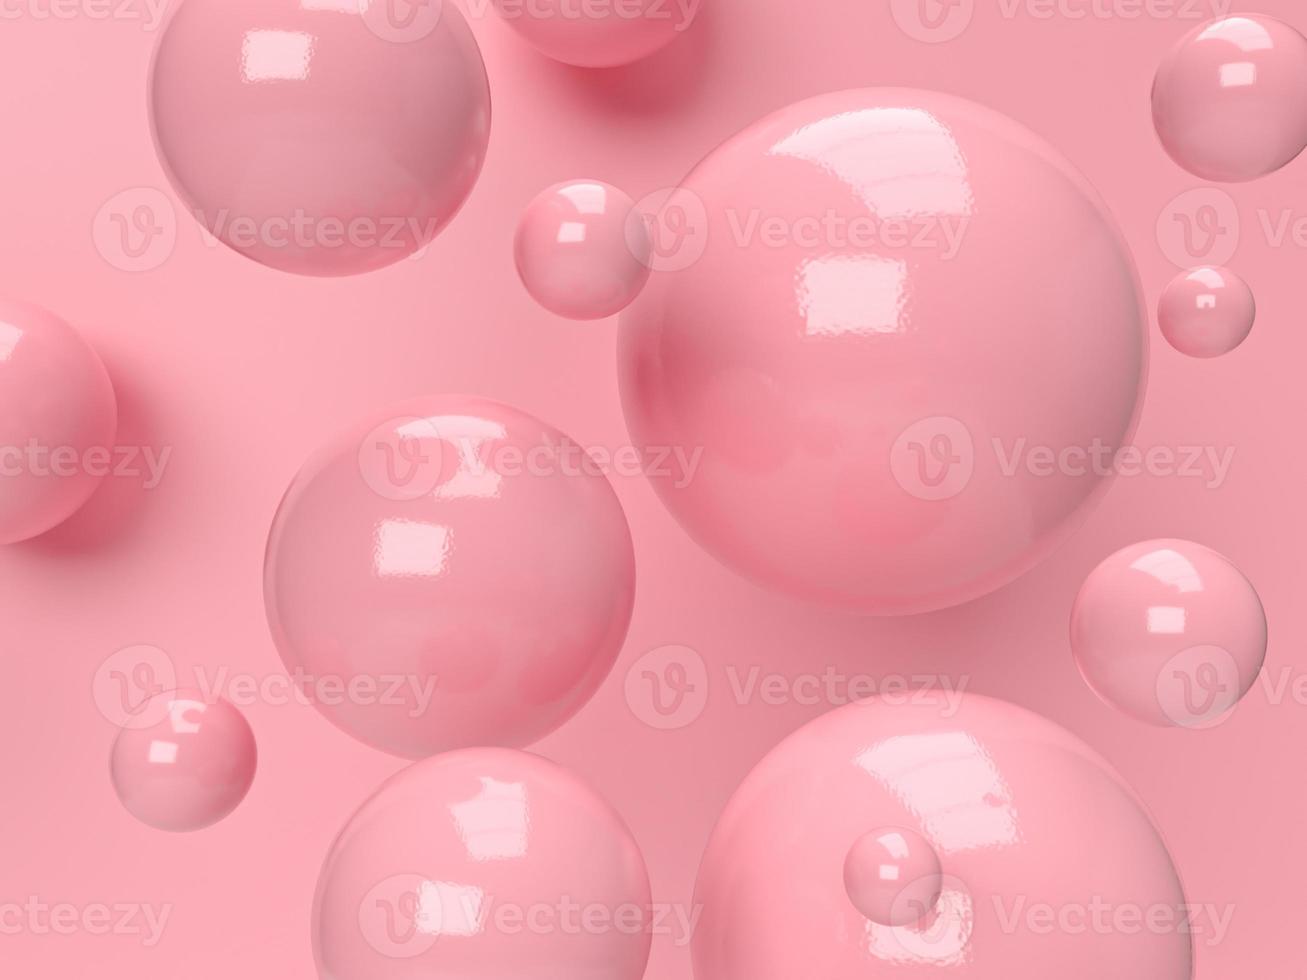 Renderizado abstracto 3d.productos de belleza establecidos para maquetas de empaques cosméticos y para el cuidado de la piel diseño mínimo sobre fondo rosa pastel foto